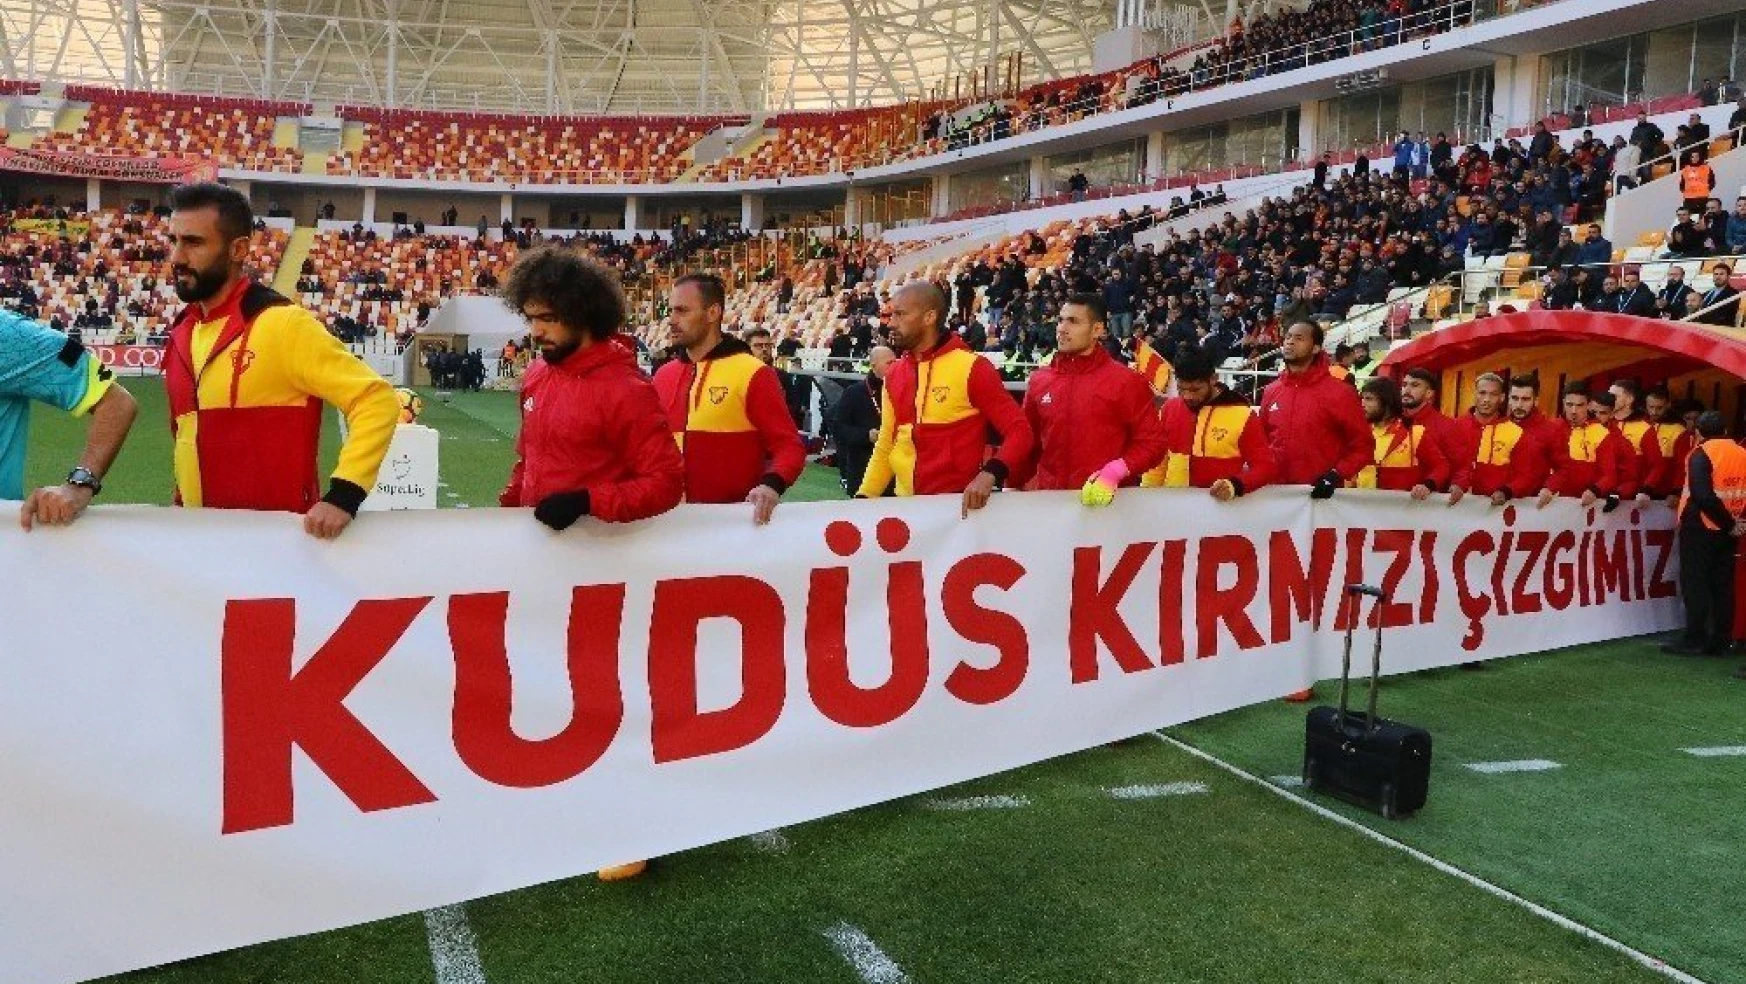 Süper Lig: Evkur Yeni Malatyaspor: 1 - Göztepe: 3 (İlk yarı)
